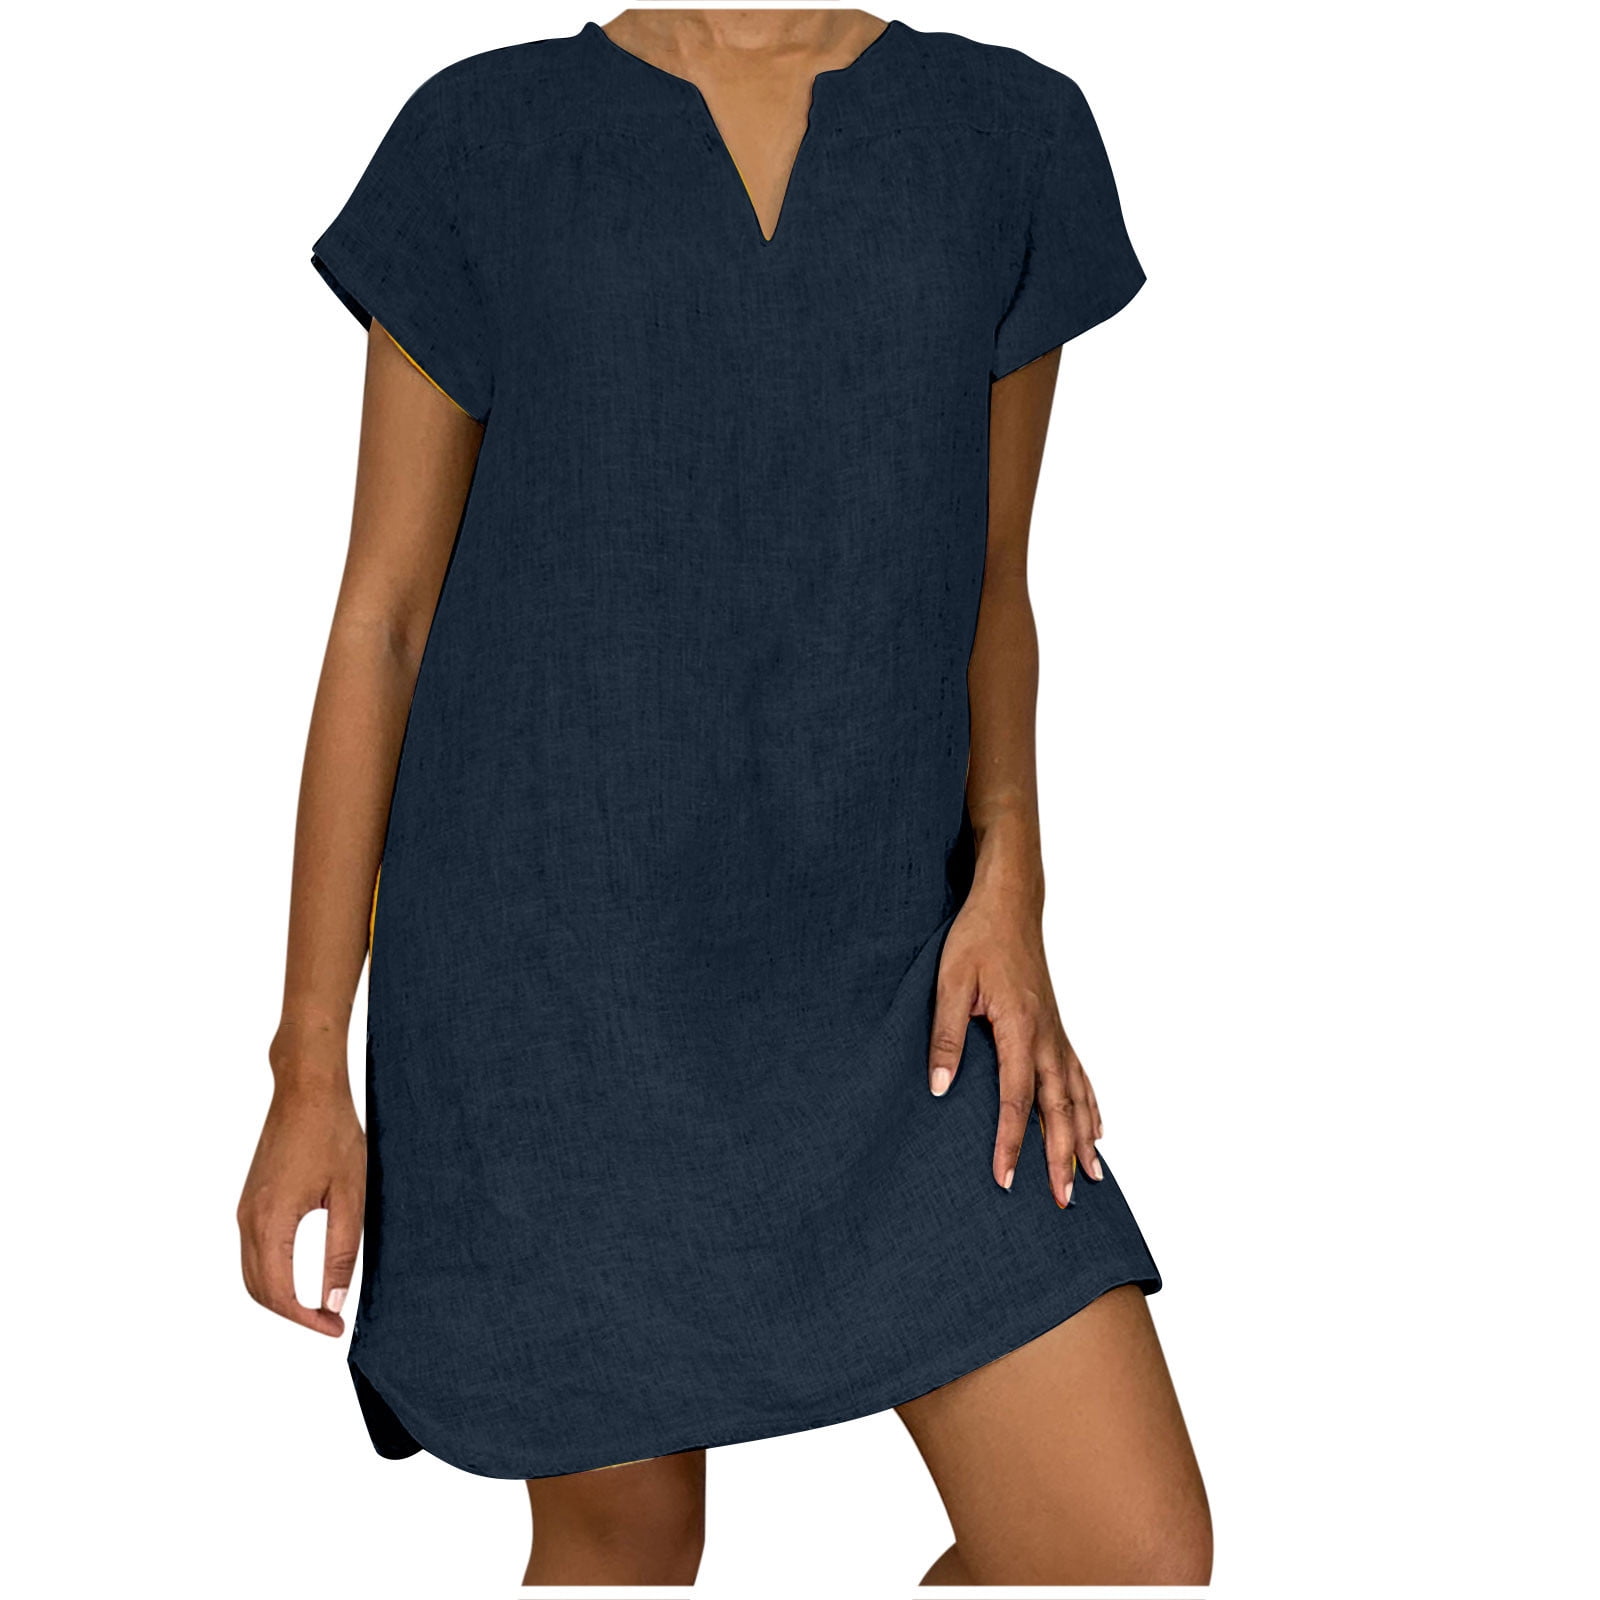 CZHJS Women's Trendy Cotton Linen Shift Dress Clearance Short Sleeve ...